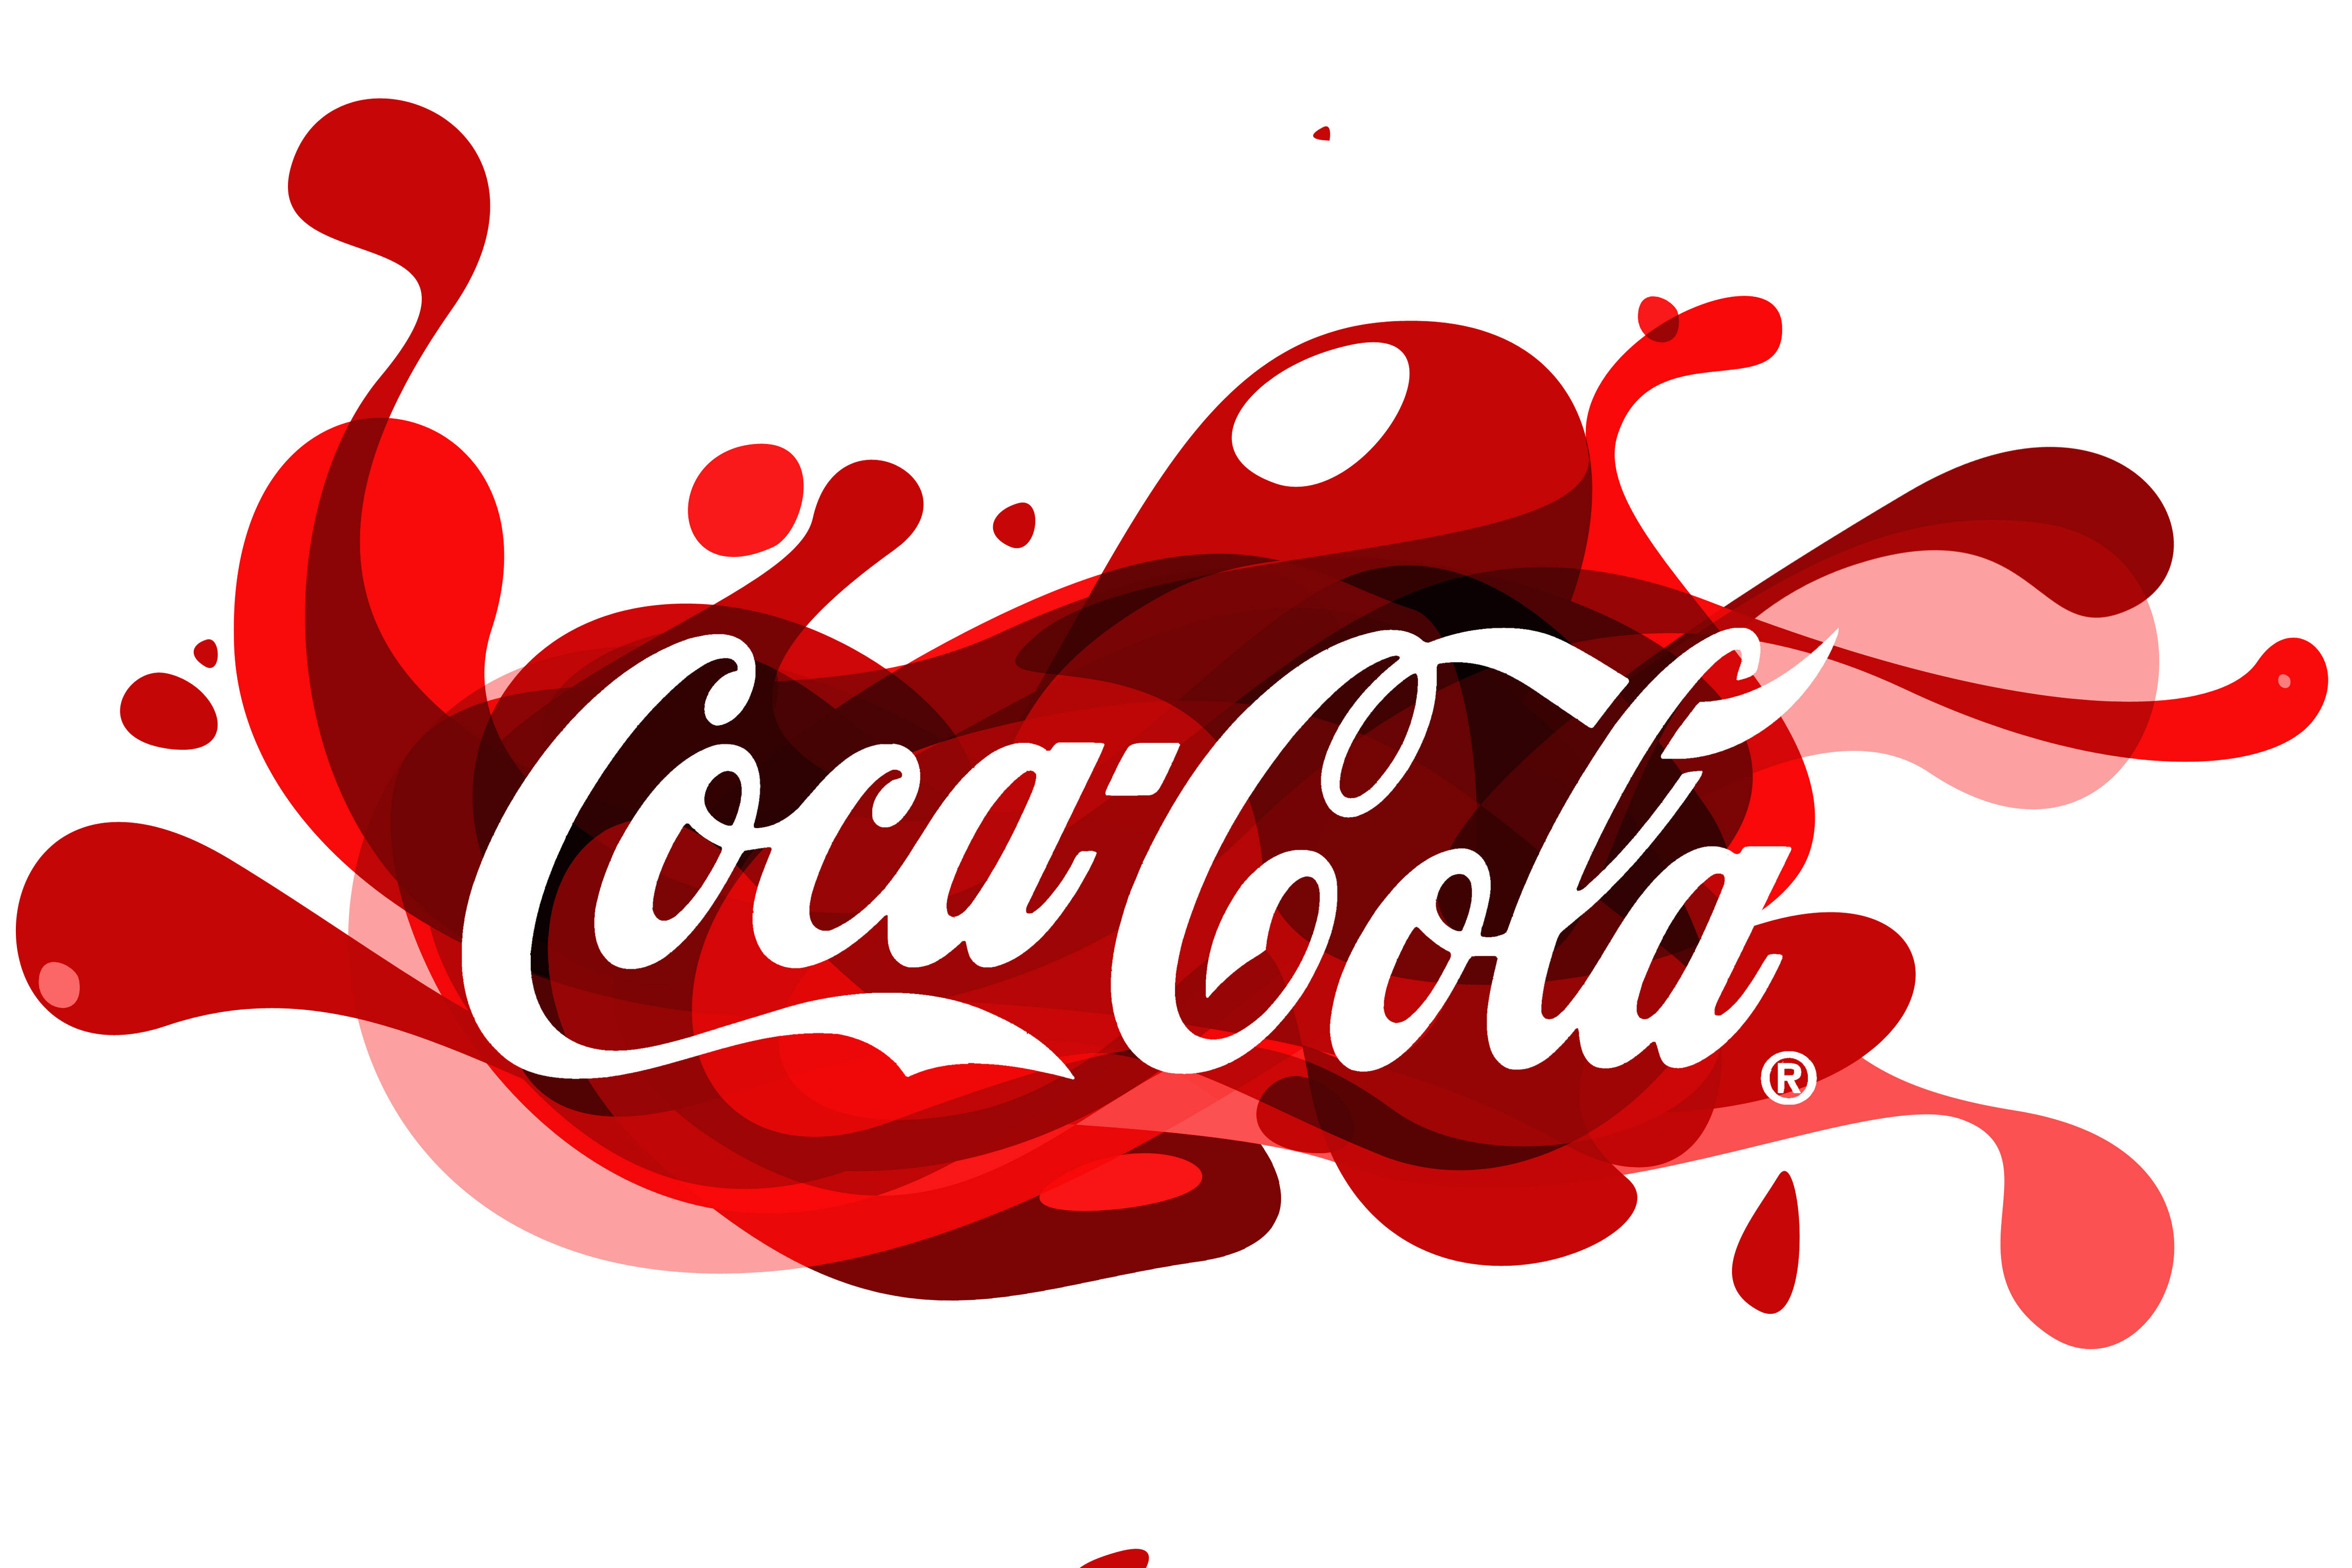 Нарисованный логотим Coca cola / Кока кола